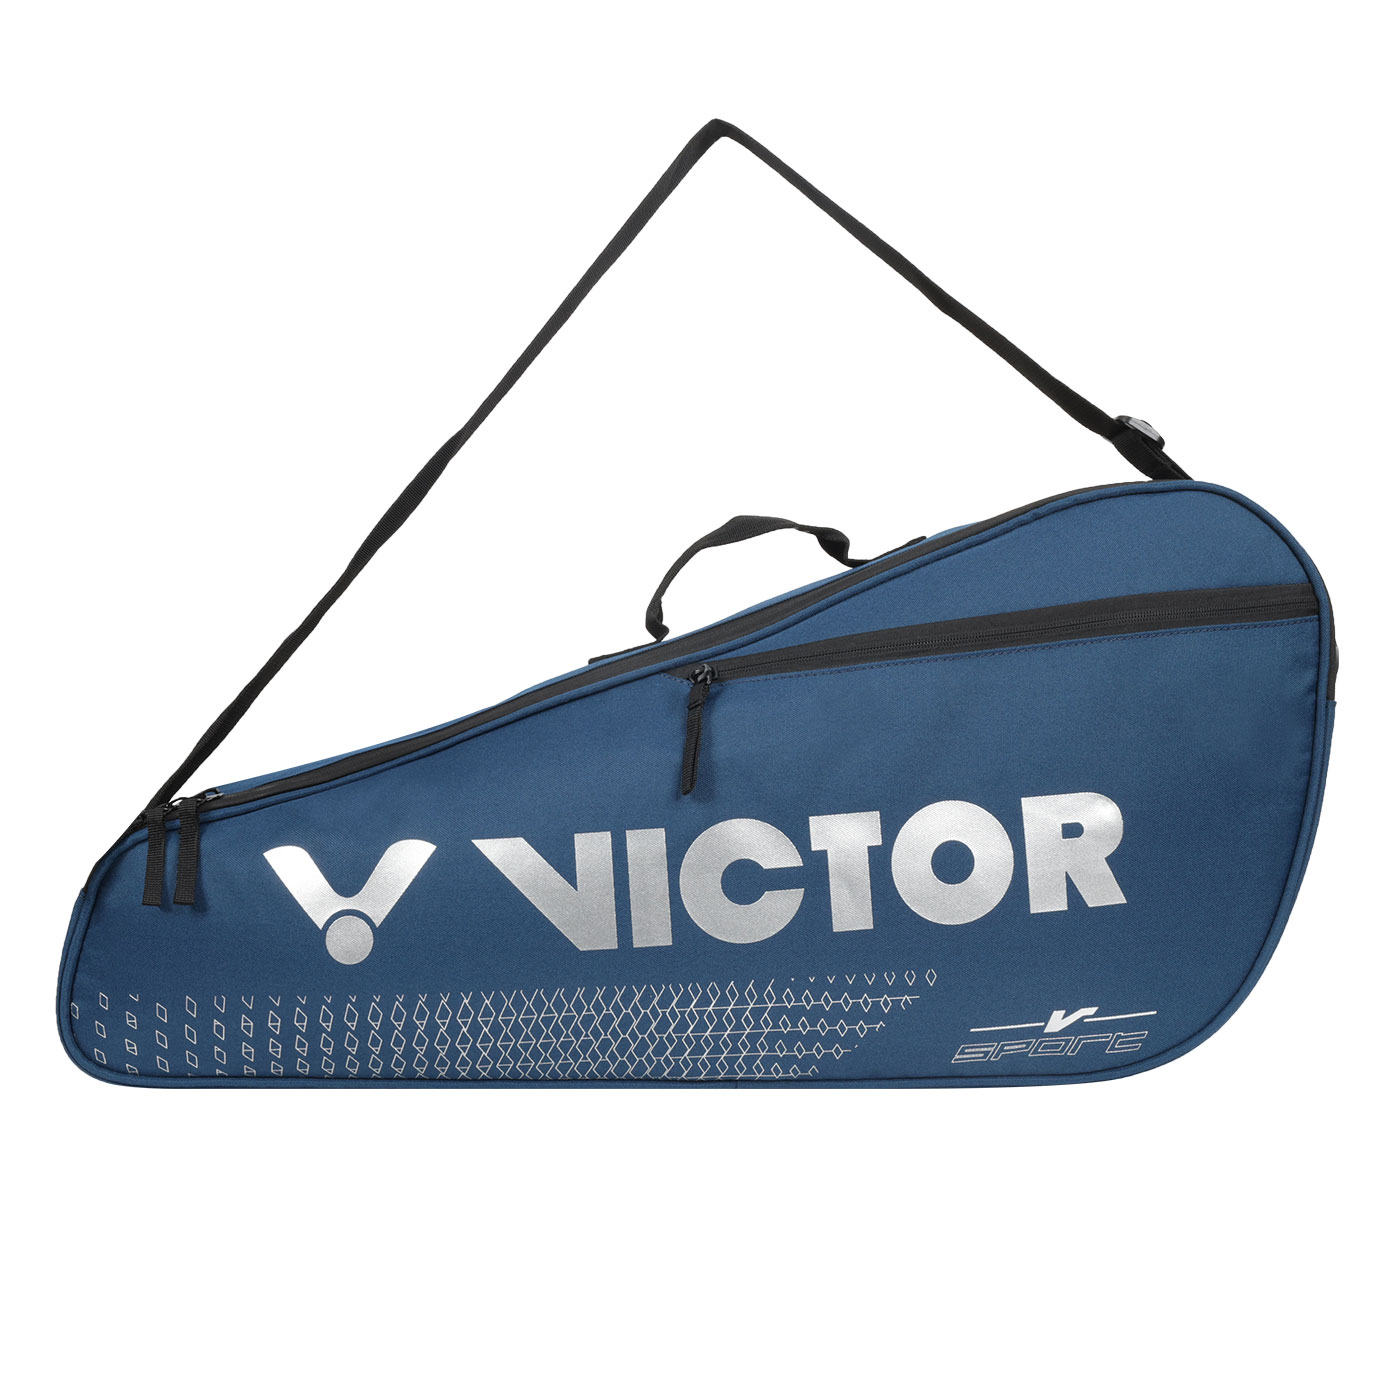 VICTOR 3支裝拍包  BR2101B - 墨藍銀